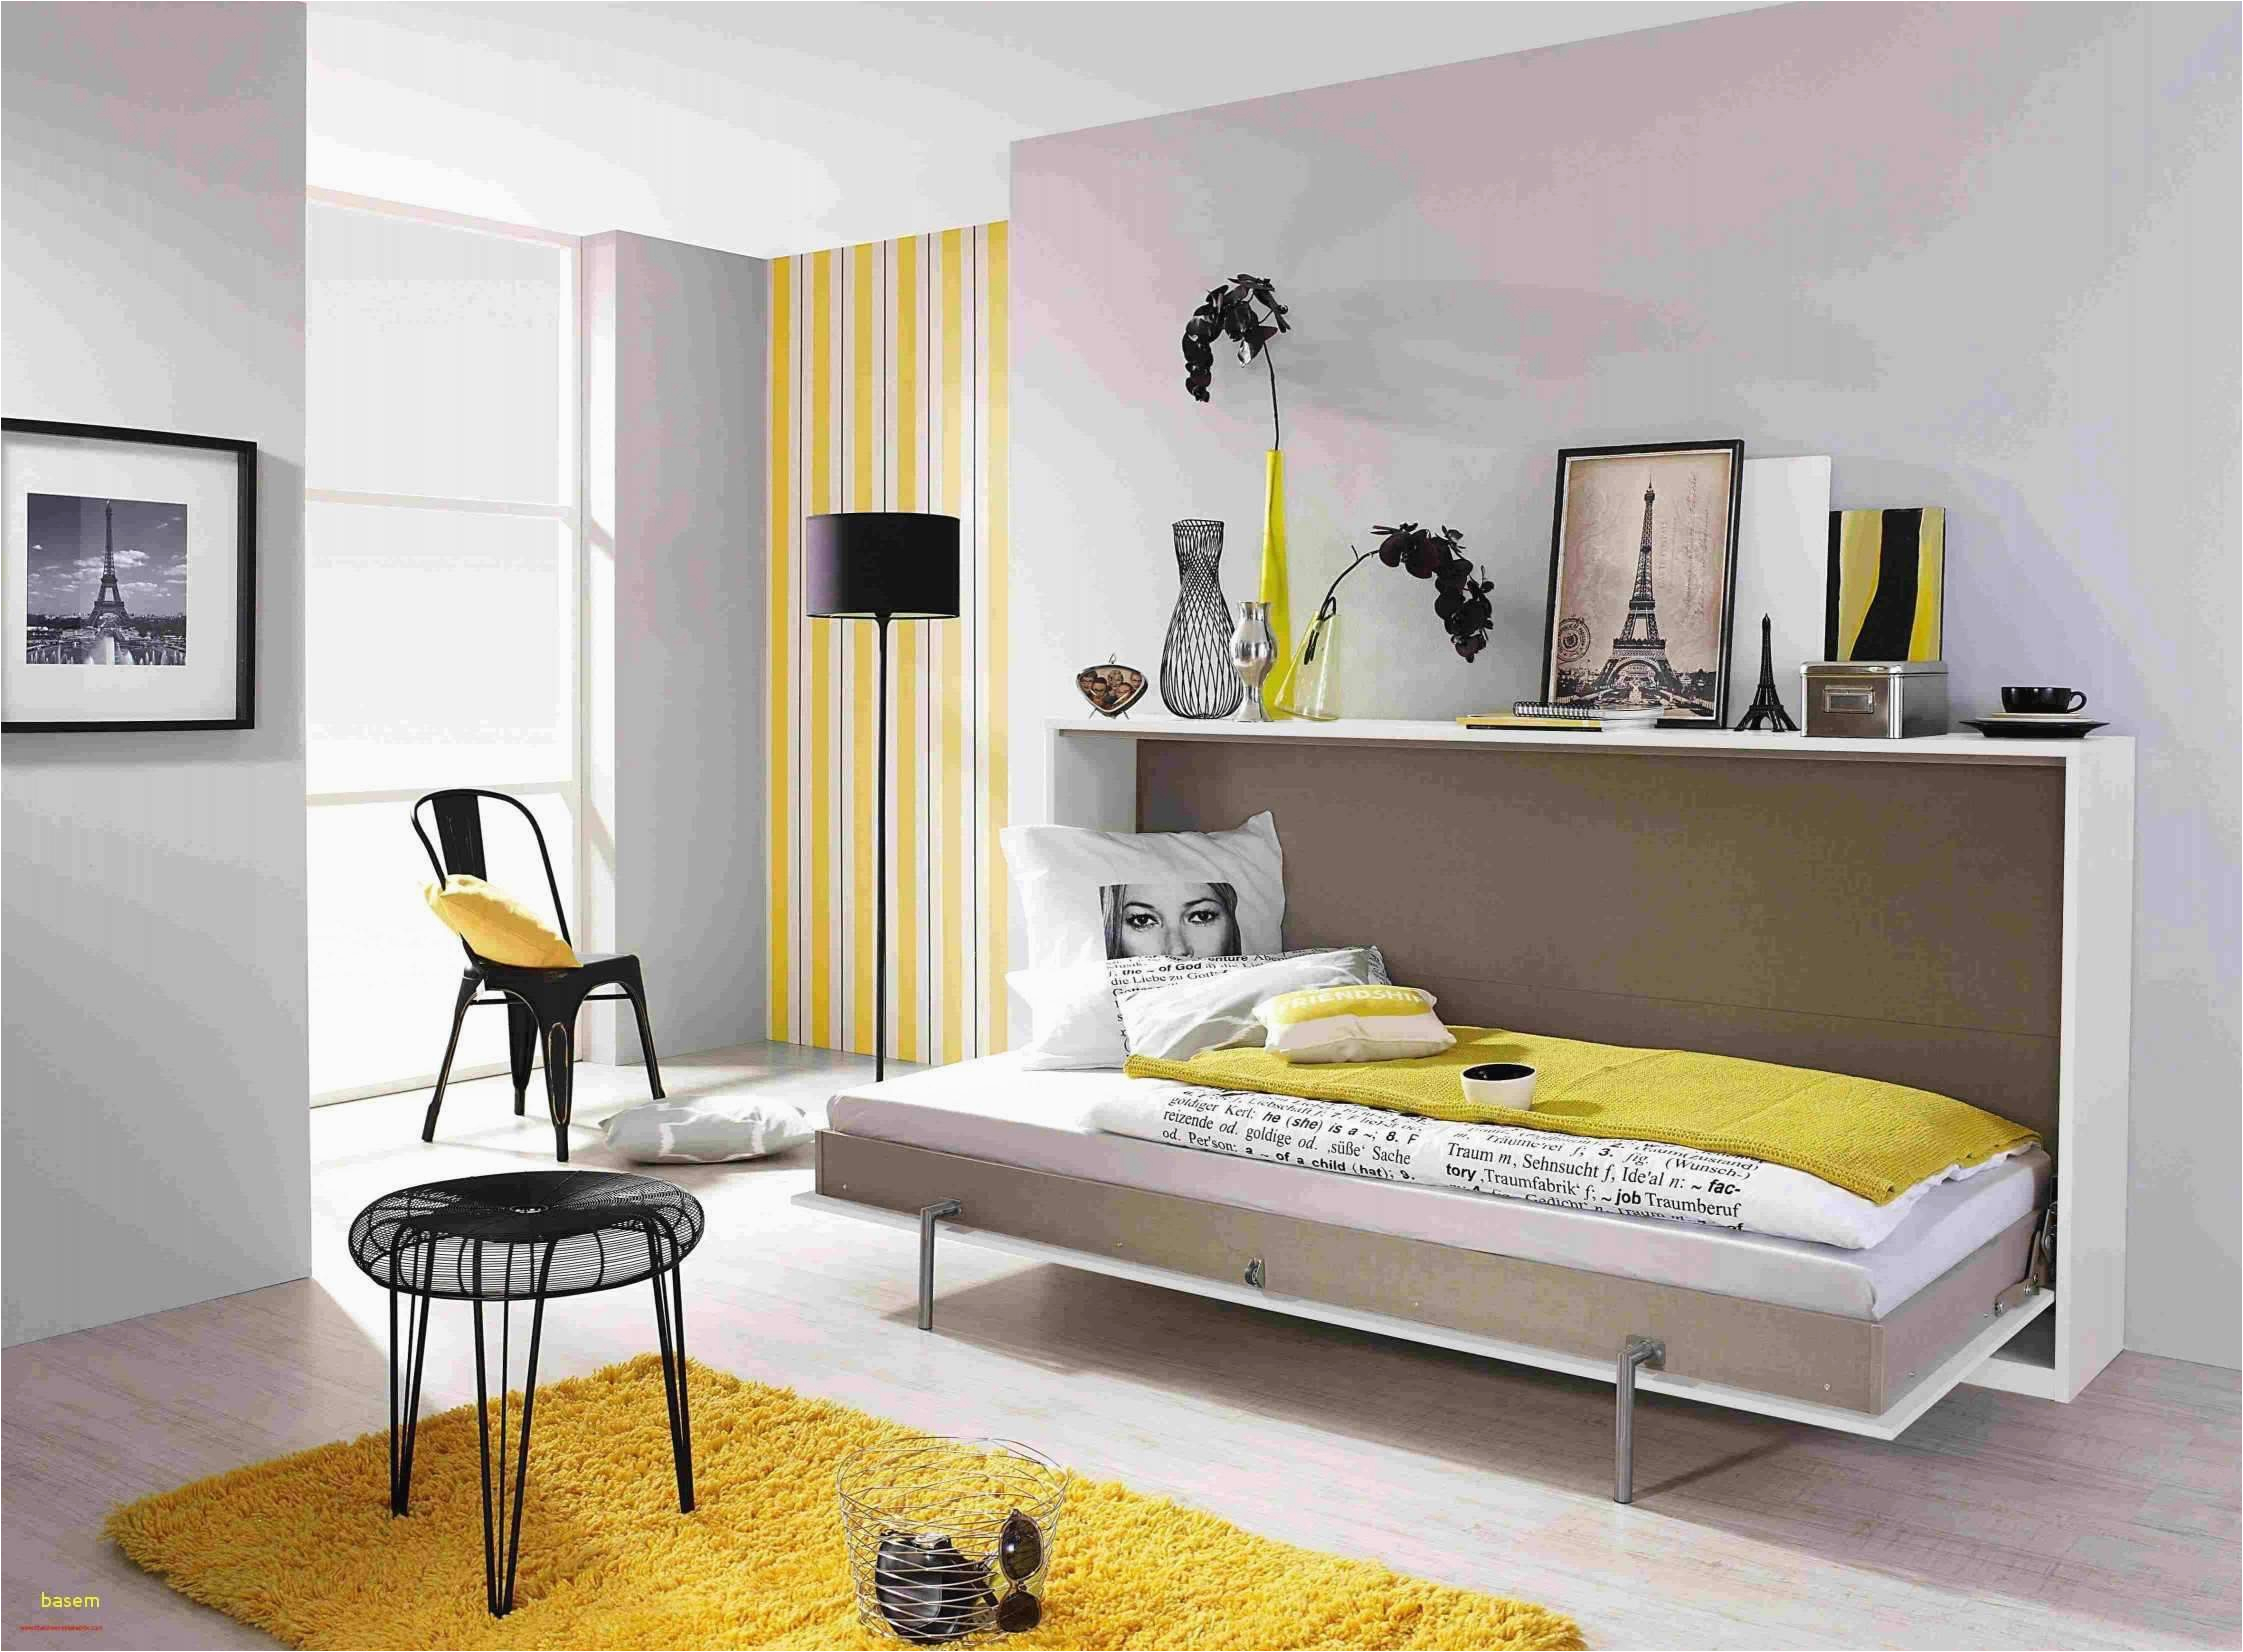 farben fur wohnzimmer das beste von 50 einzigartig von farbe fur wohnzimmer planen of farben fur wohnzimmer